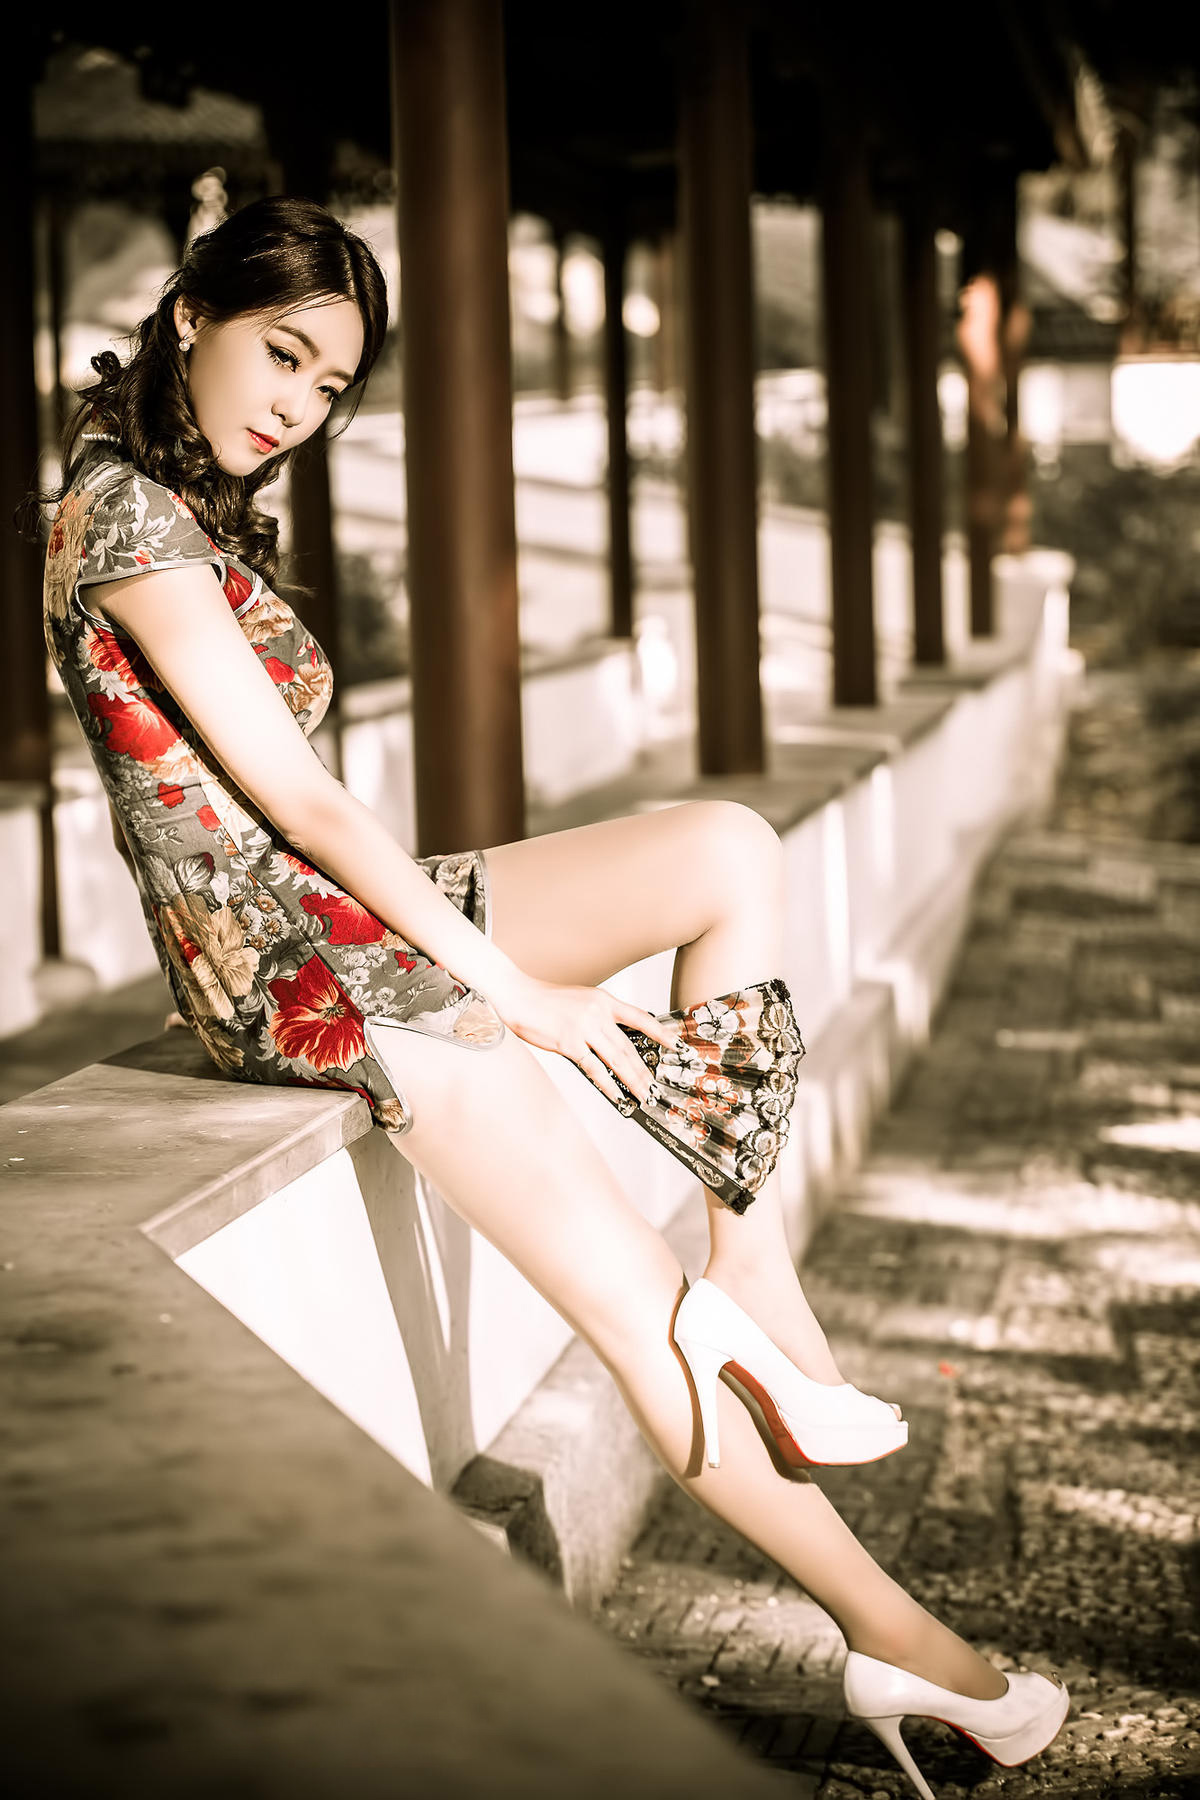 穿越过去,老上海的旗袍美人